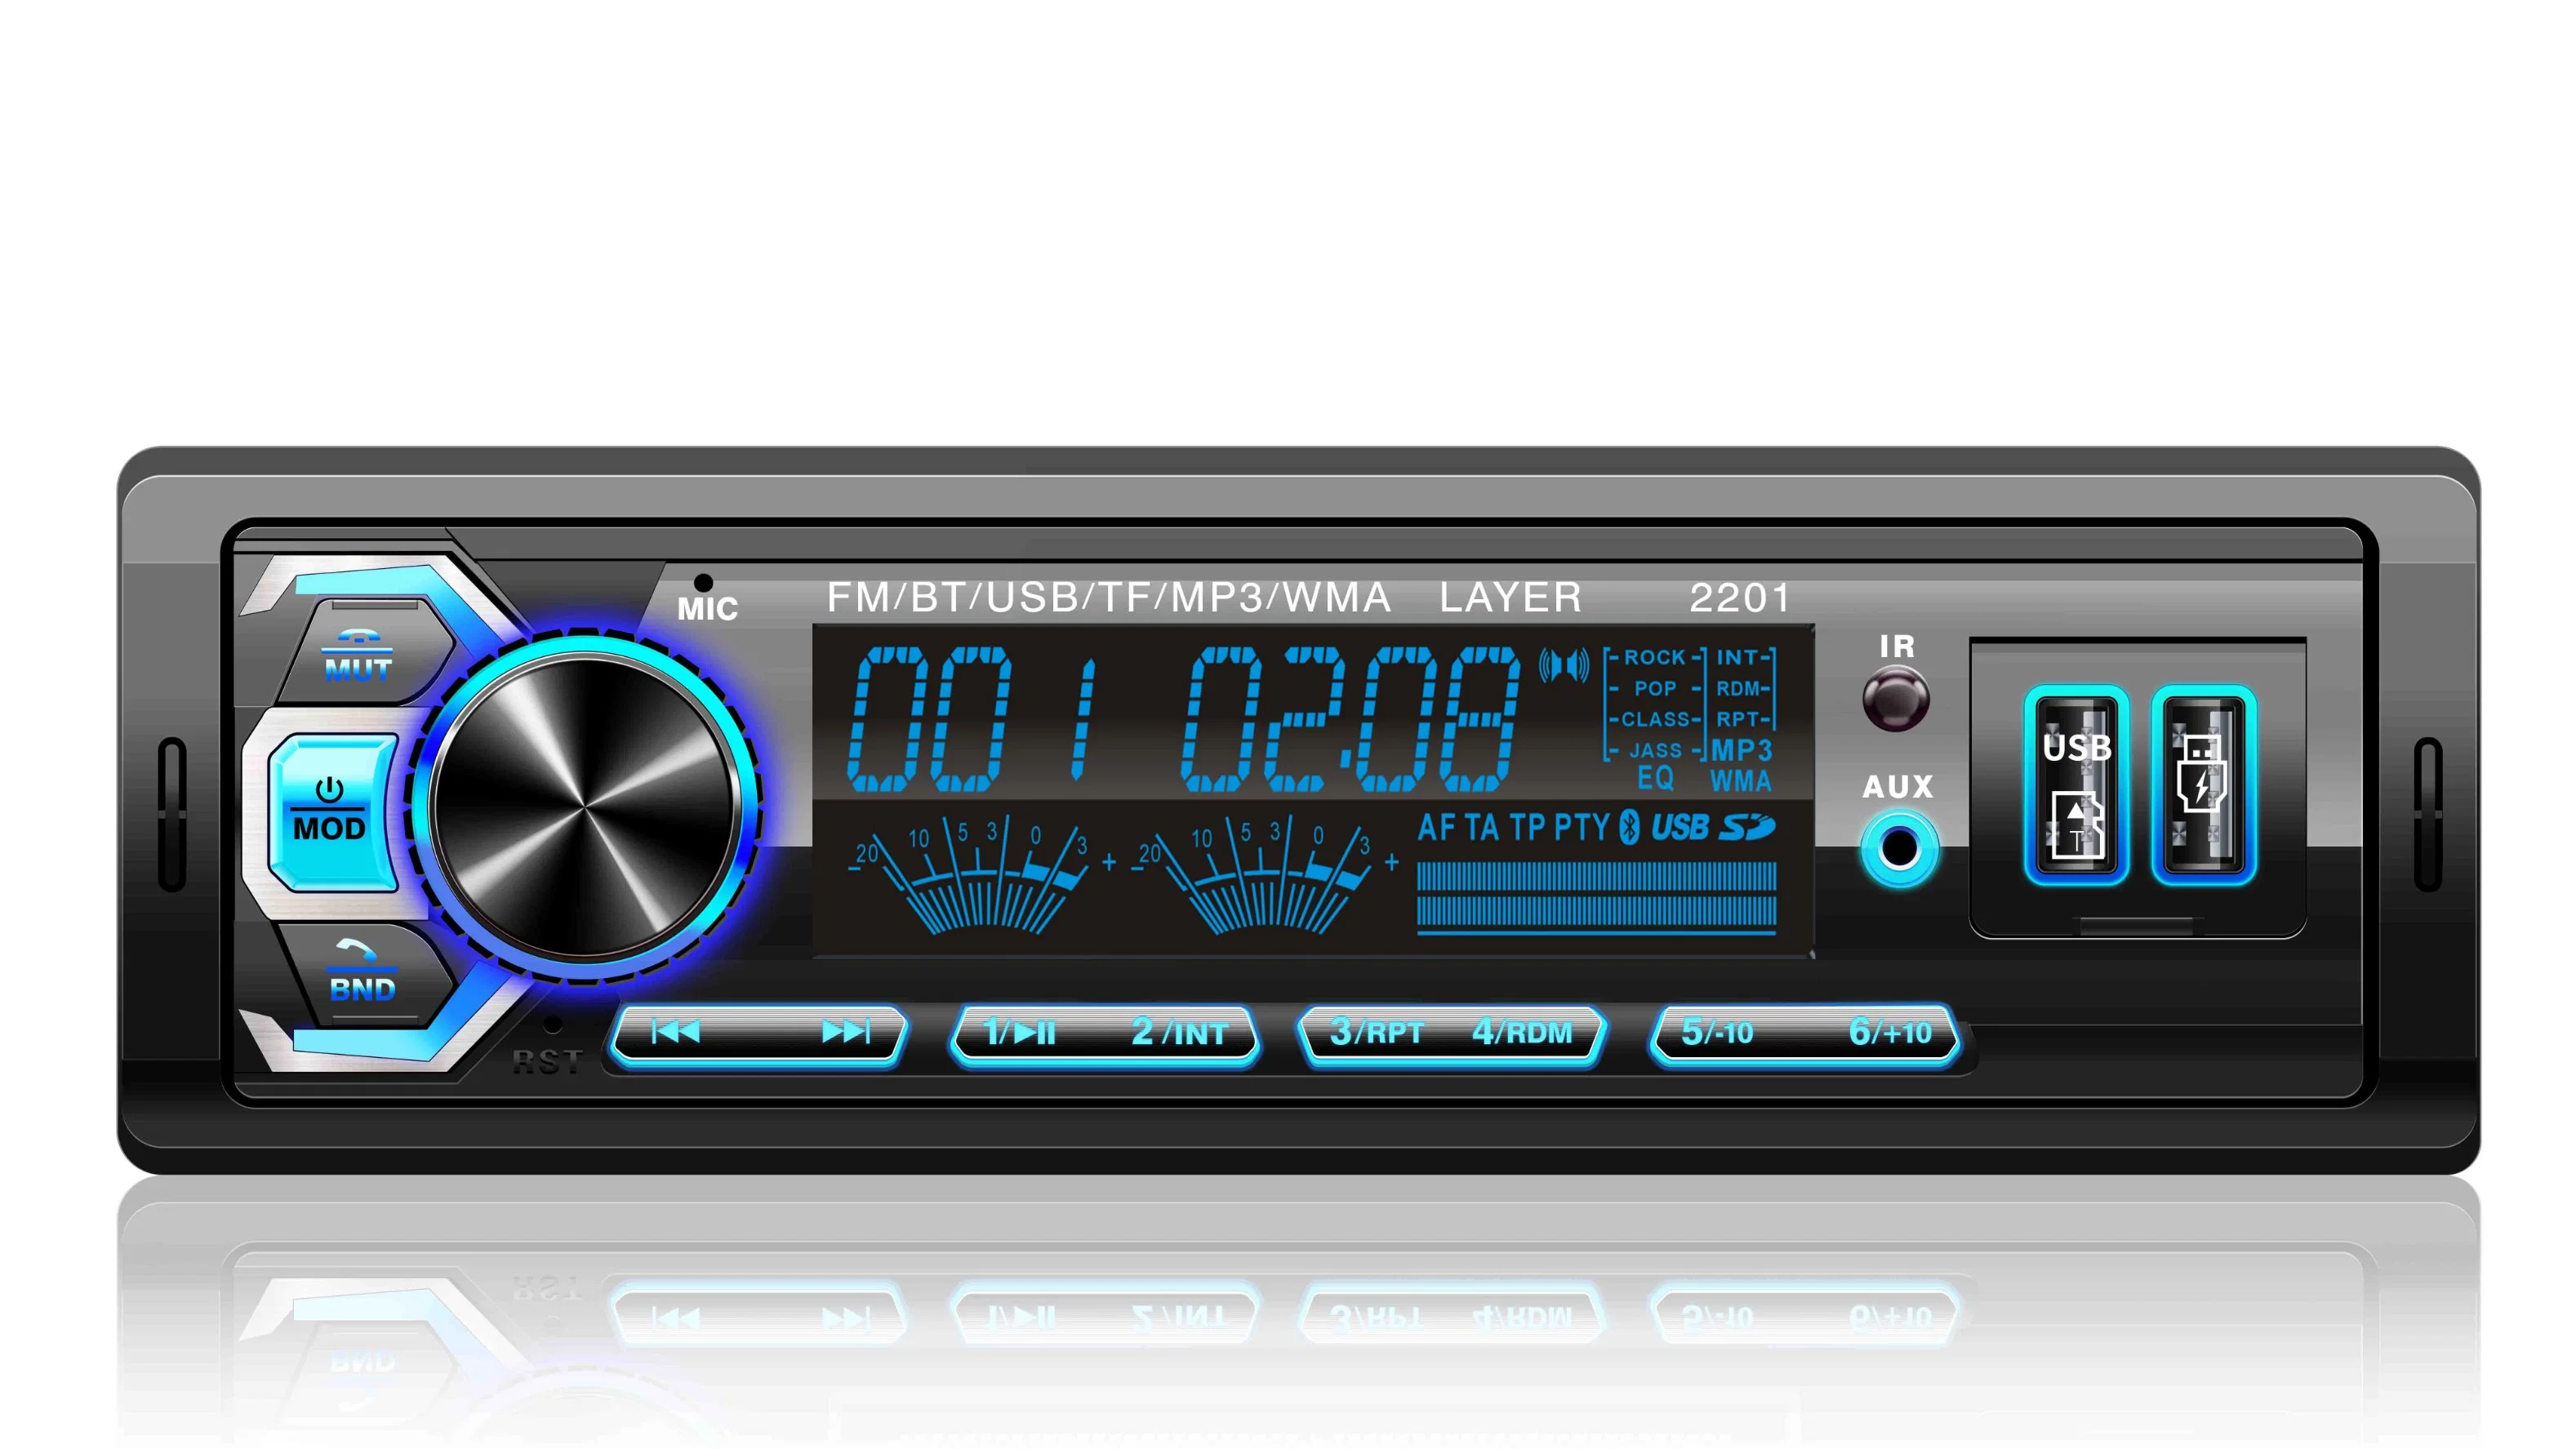 La radio digital FM Coche Bluetooth reproductor de audio MP3.